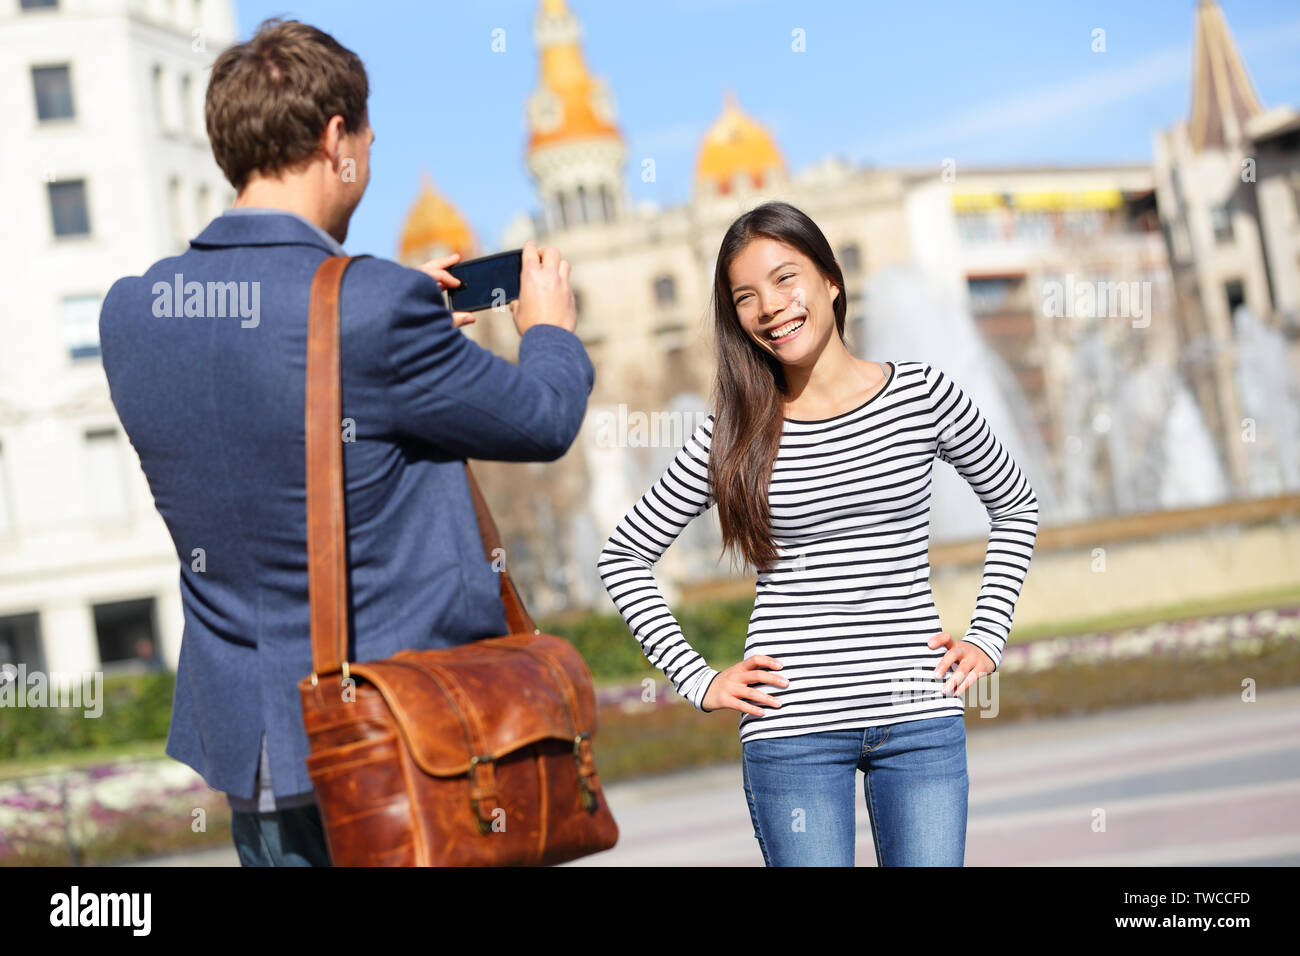 Touristen, die auf Reisen in Barcelona. Gerne urban junges Paar unter Foto Portrait mit smart phone Kamera. Der Mann und die Frau am Placa de Catalunya Plaça Catalunya, Barcelona, Spanien. Stockfoto